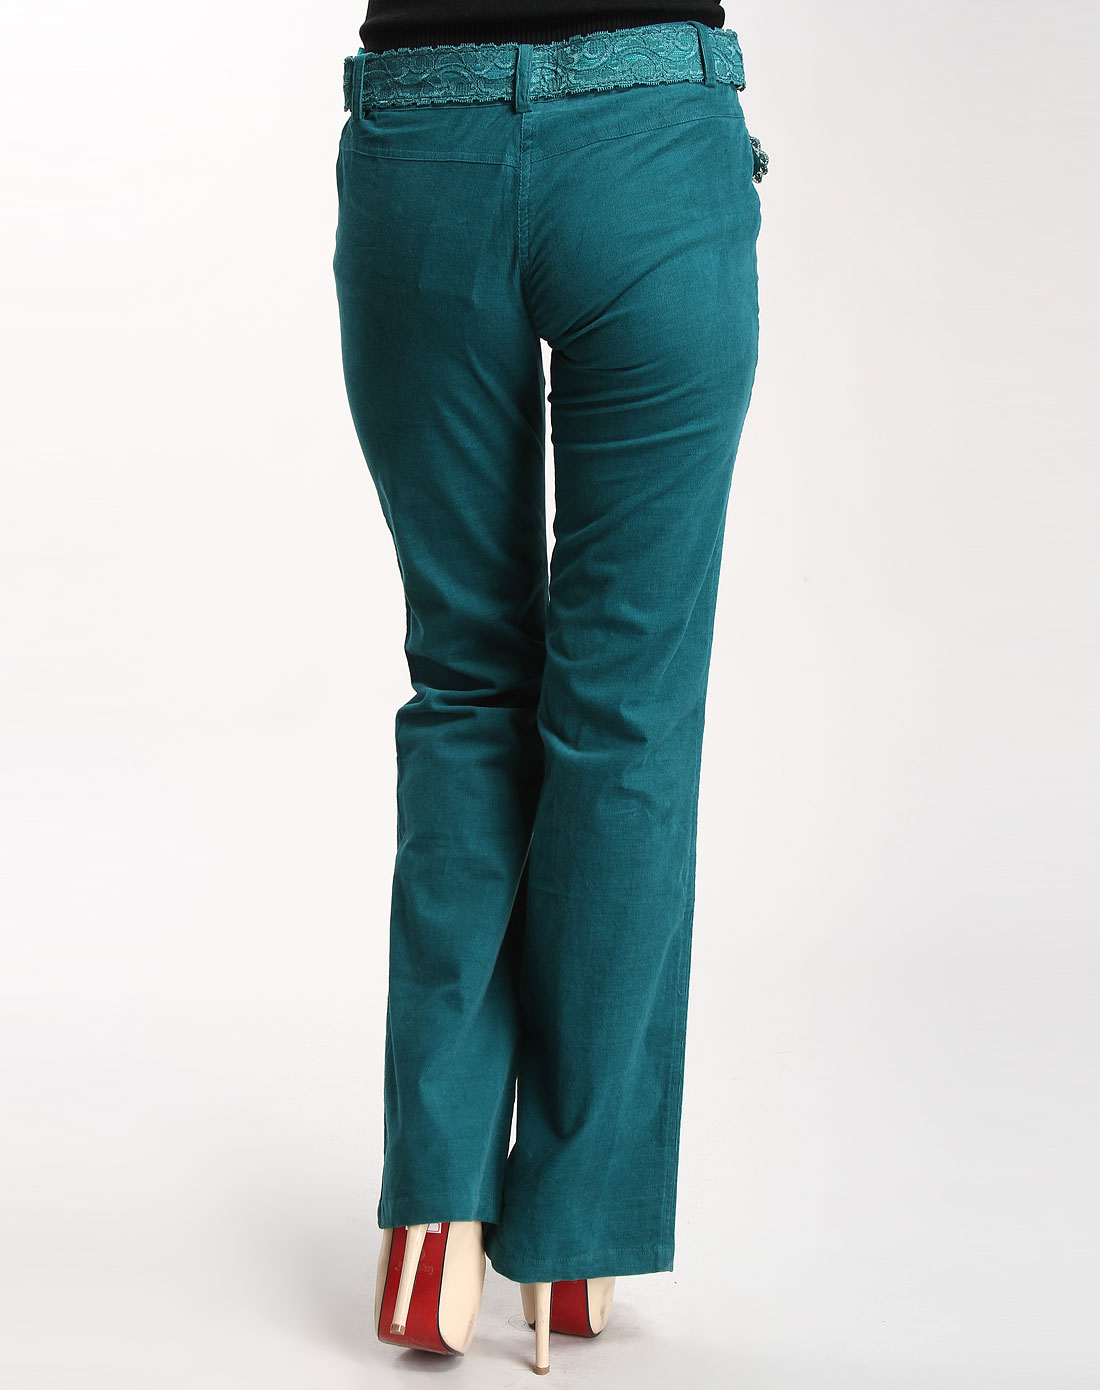 墨绿色时尚蕾丝休闲长裤